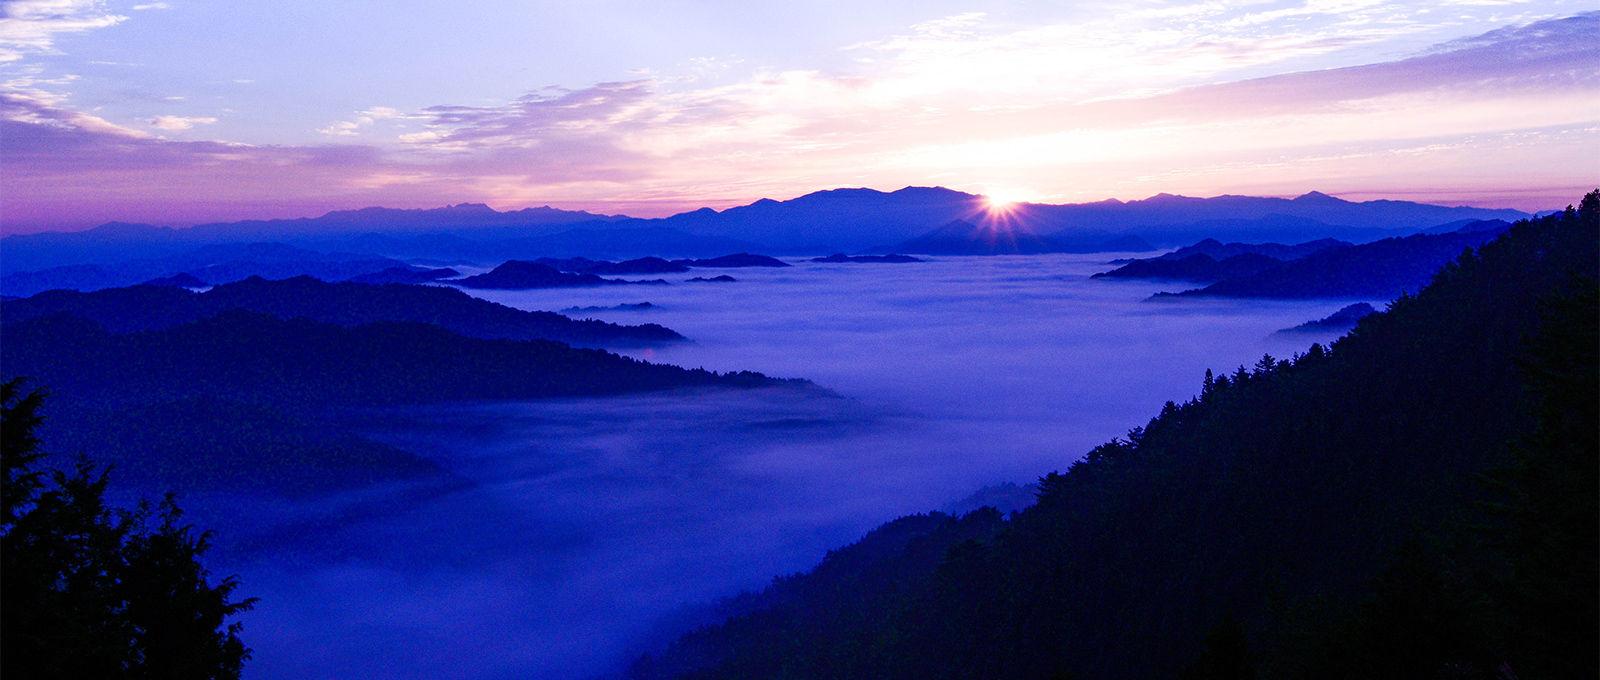 山から朝日が昇る写真